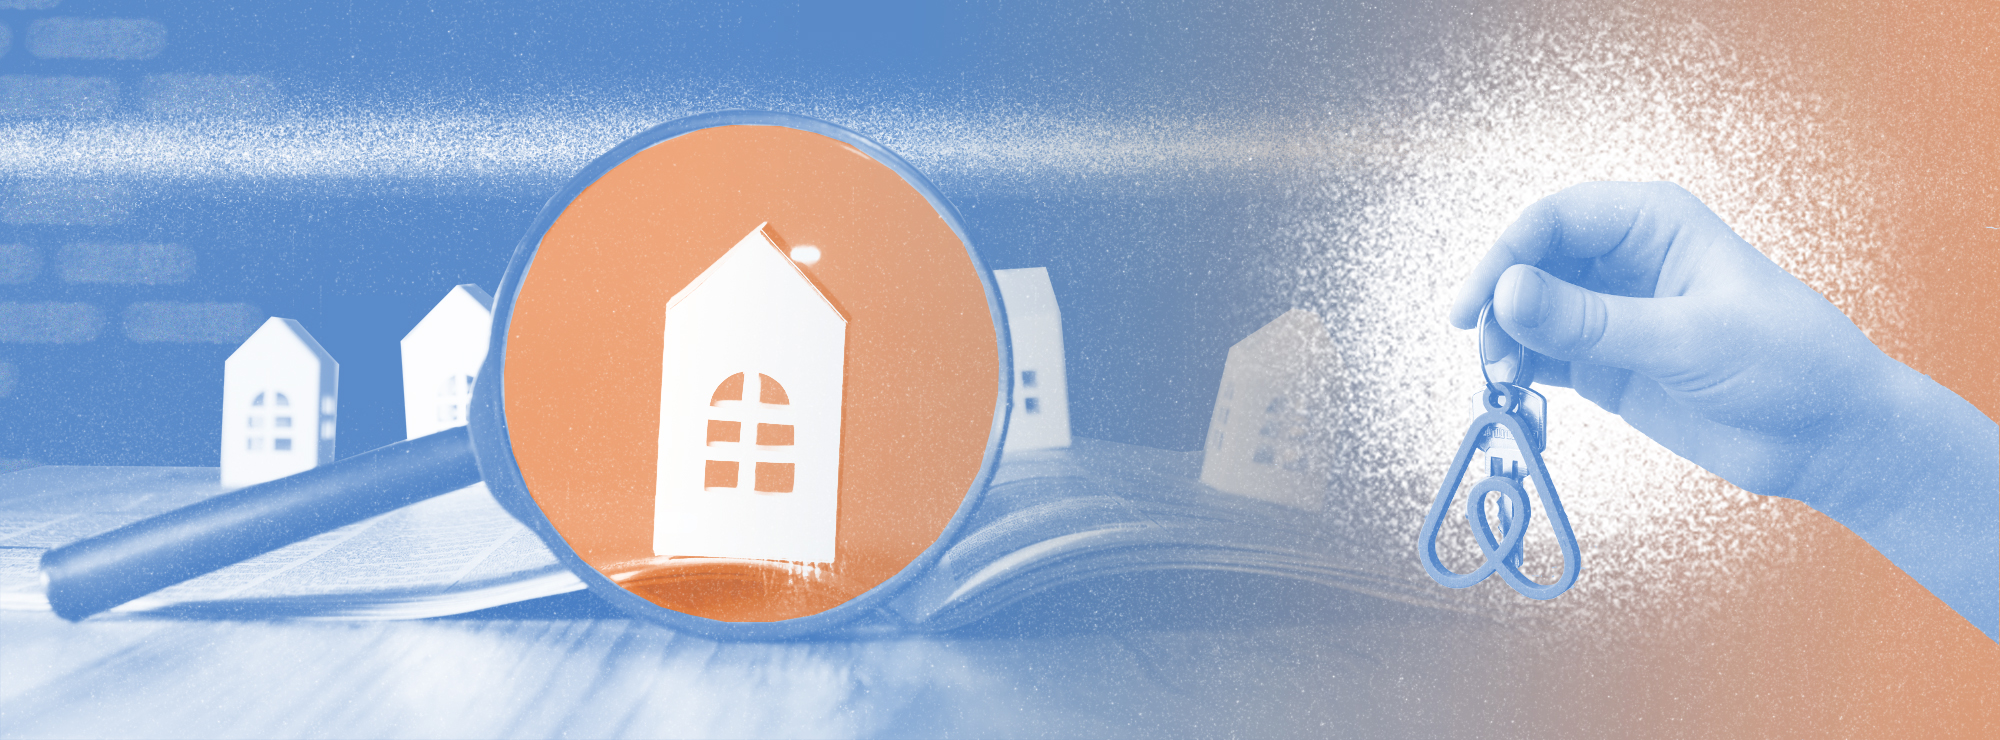 Полноразмерная обложка поста на тему: Впервые арендуете квартиру за границей на Airbnb: 7 вопросов, которые нужно задать хозяину жилья до бронирования